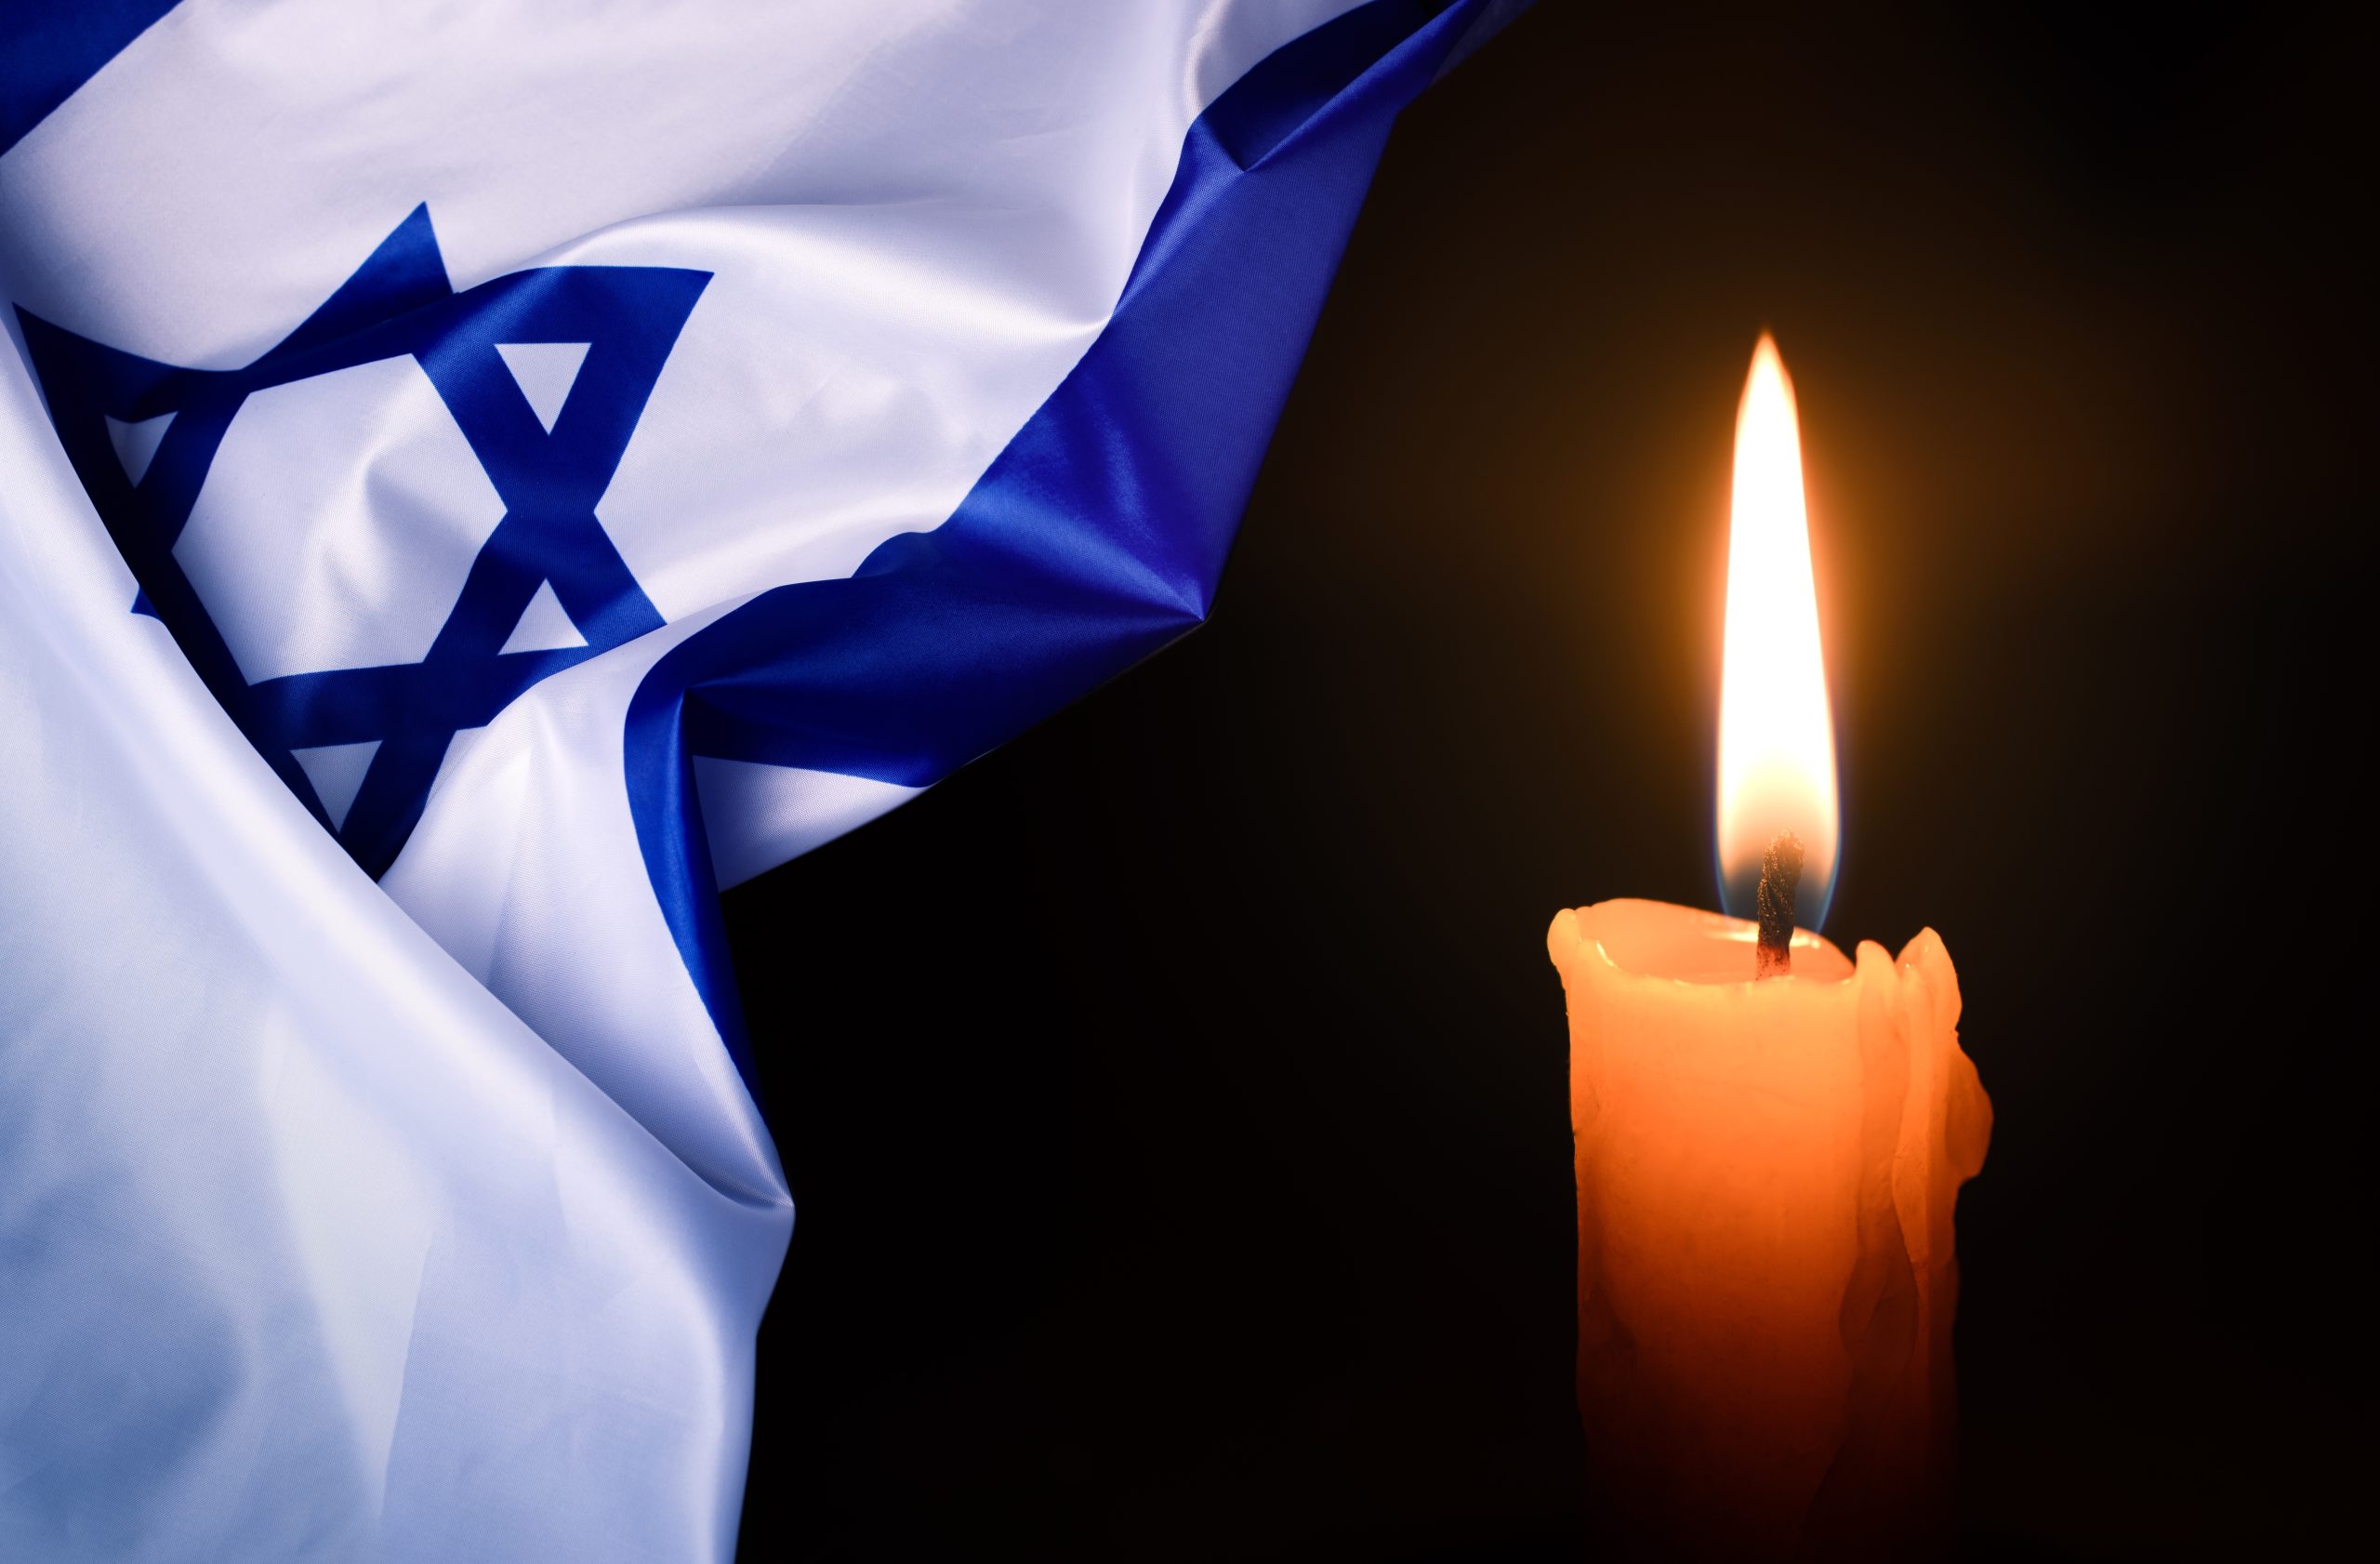 נר זכרון ודגל ישראל Memorial candle and Israeli flag